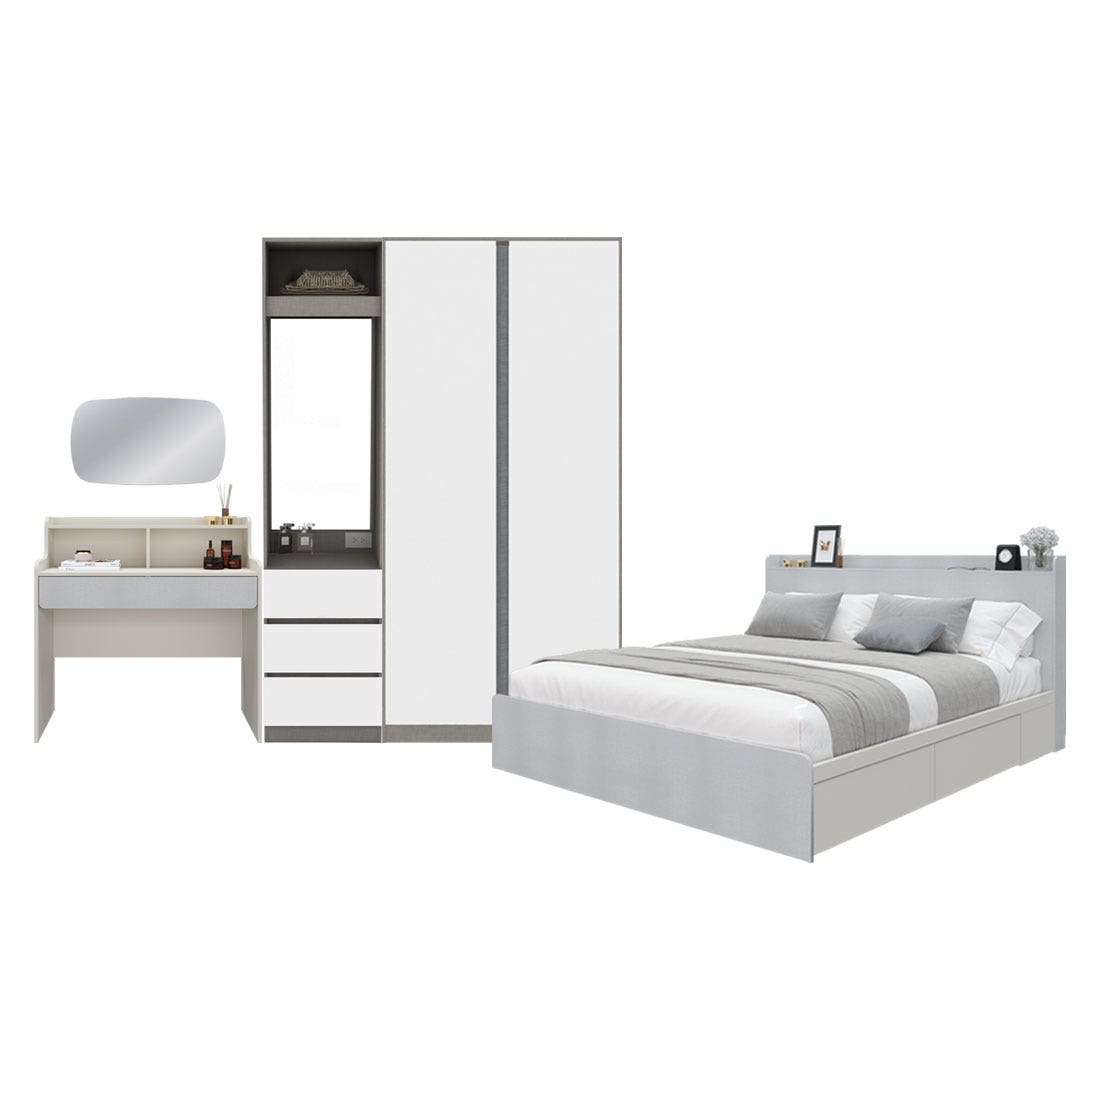 ชุดห้องนอน 6 ฟุต & ตู้ Blox 150 ซม. & โต๊ะเครื่องแป้ง รุ่น Aiko สีขาว 02